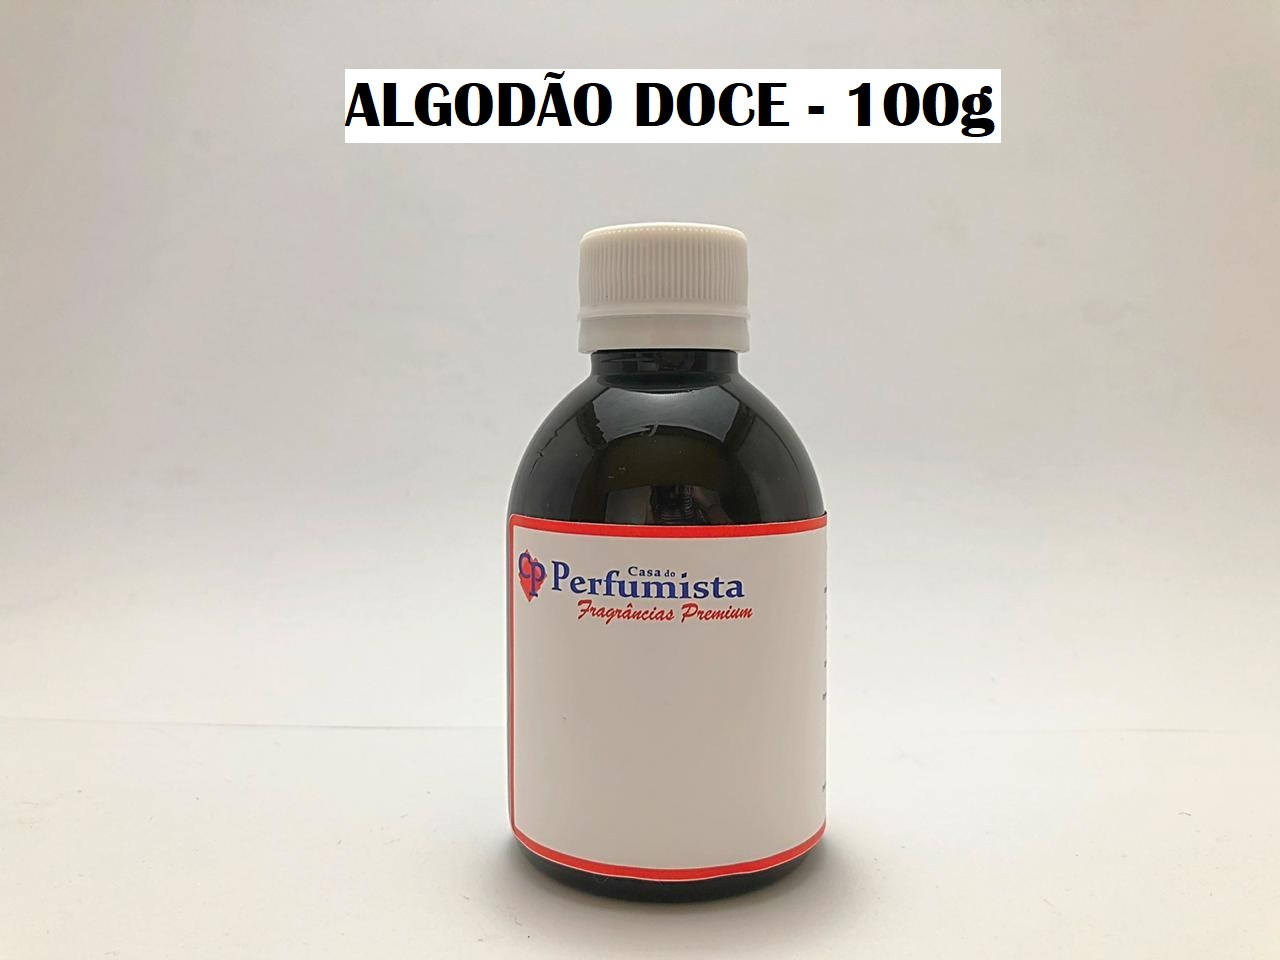 ALGODÃO DOCE - 100g